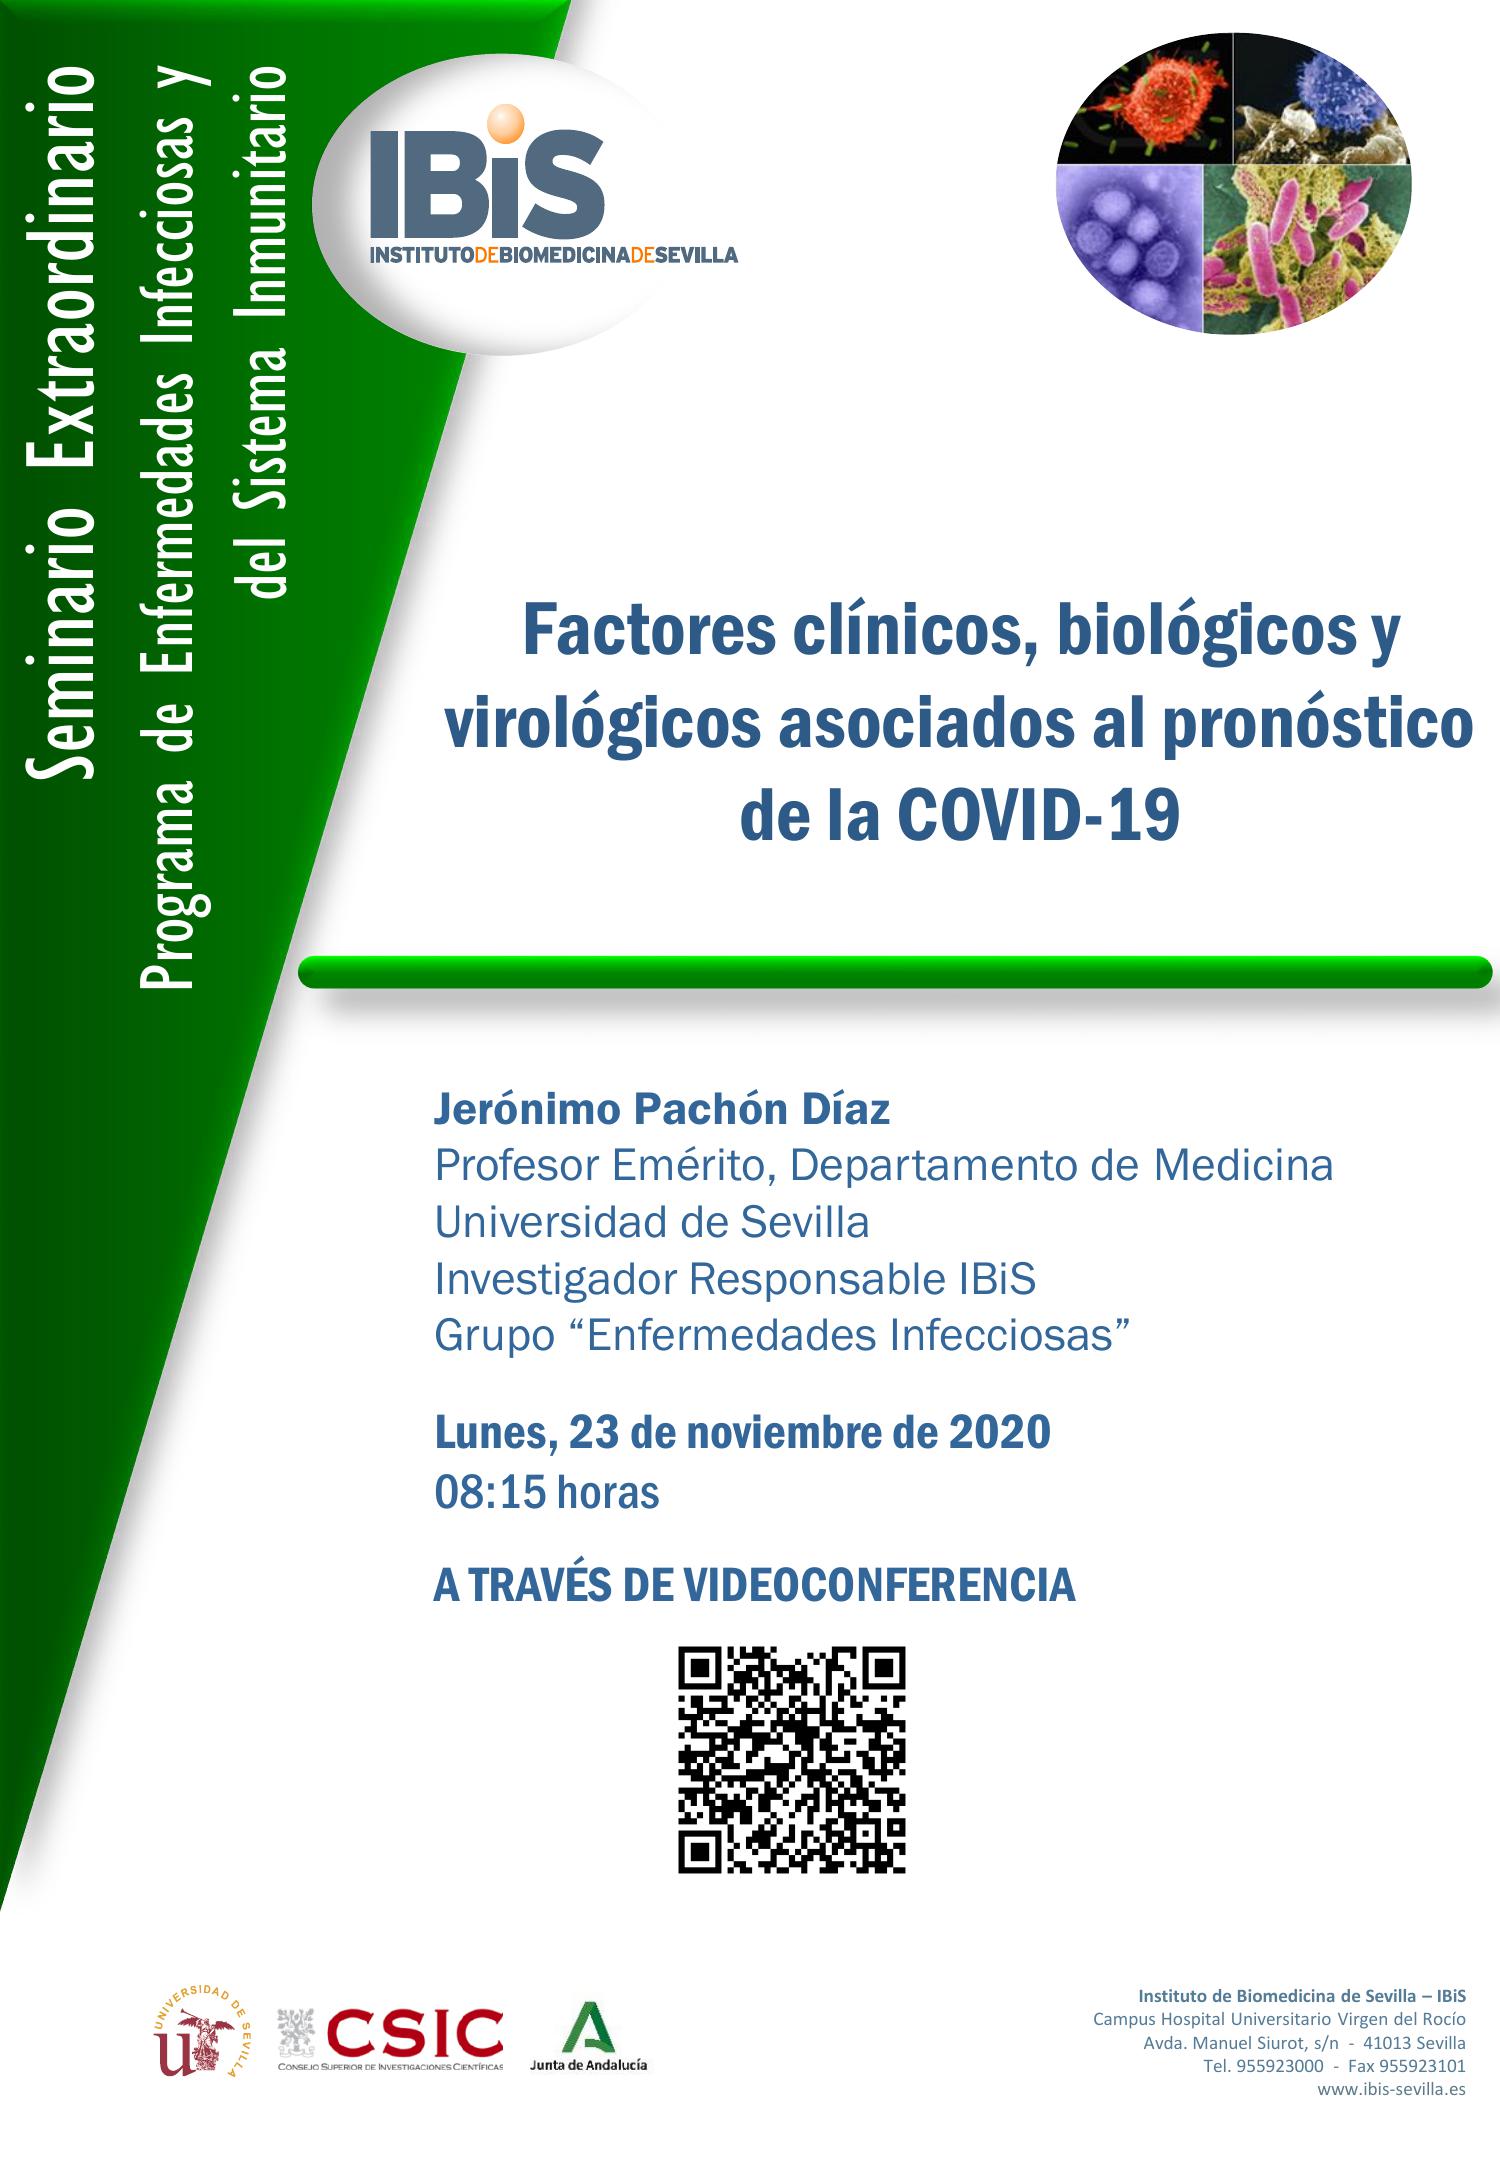 Poster: Factores clínicos, biológicos y virológicos asociados al pronóstico de la COVID-19